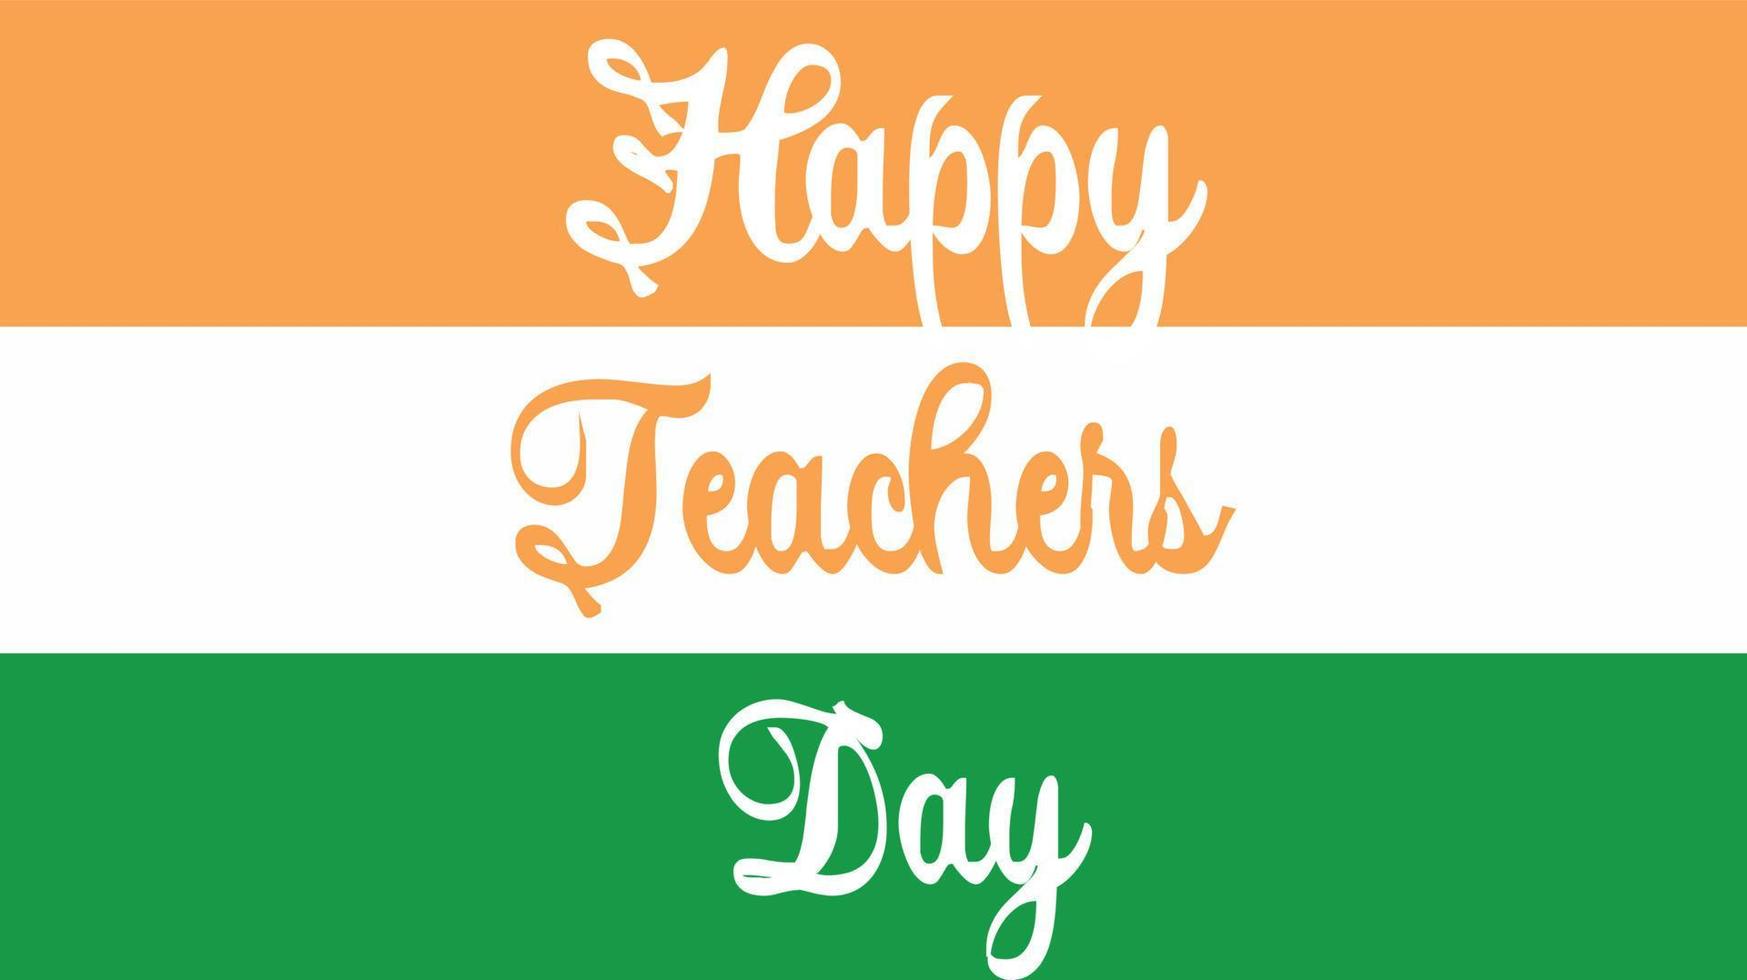 feliz ilustração do conceito de celebração do dia dos professores com bandeira indiana. vetor